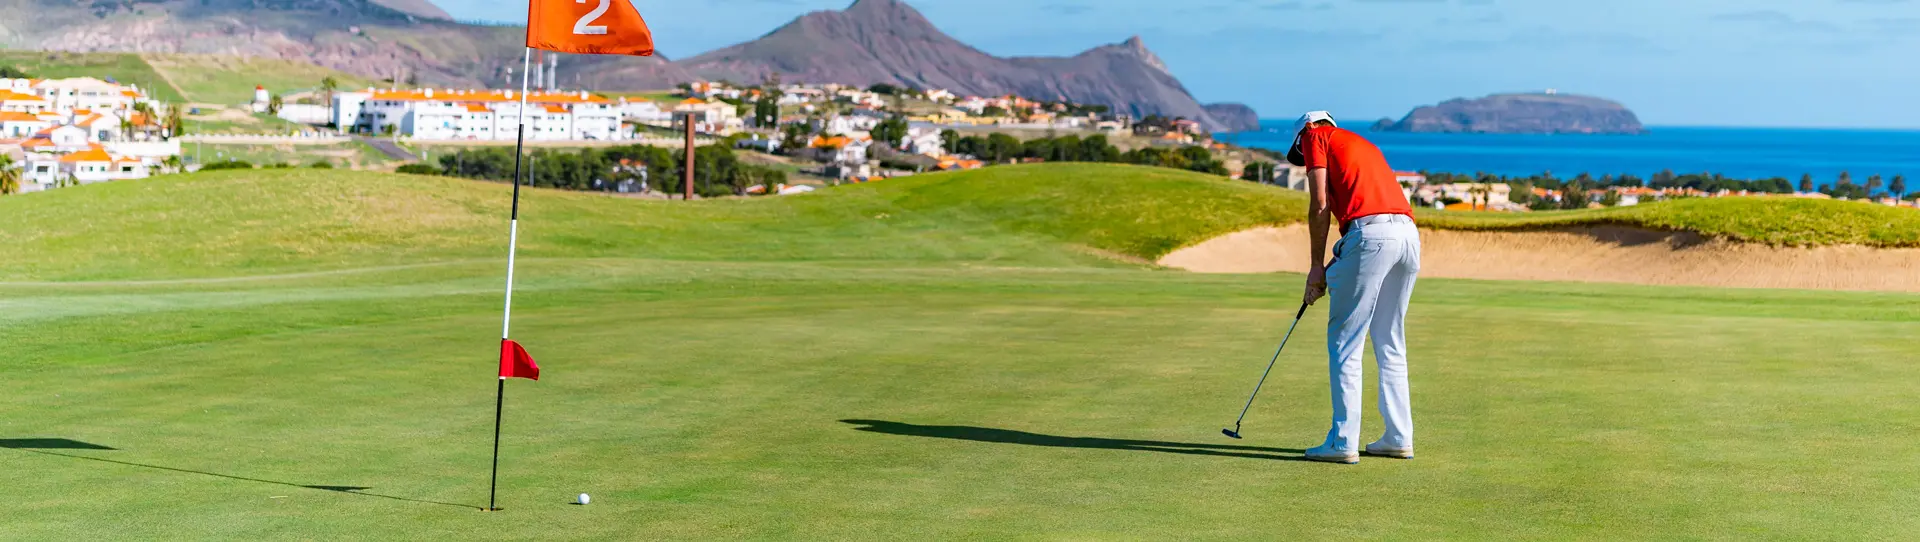 Portugal golf holidays - Porto Santo Golf Course 2 rounds - Photo 1